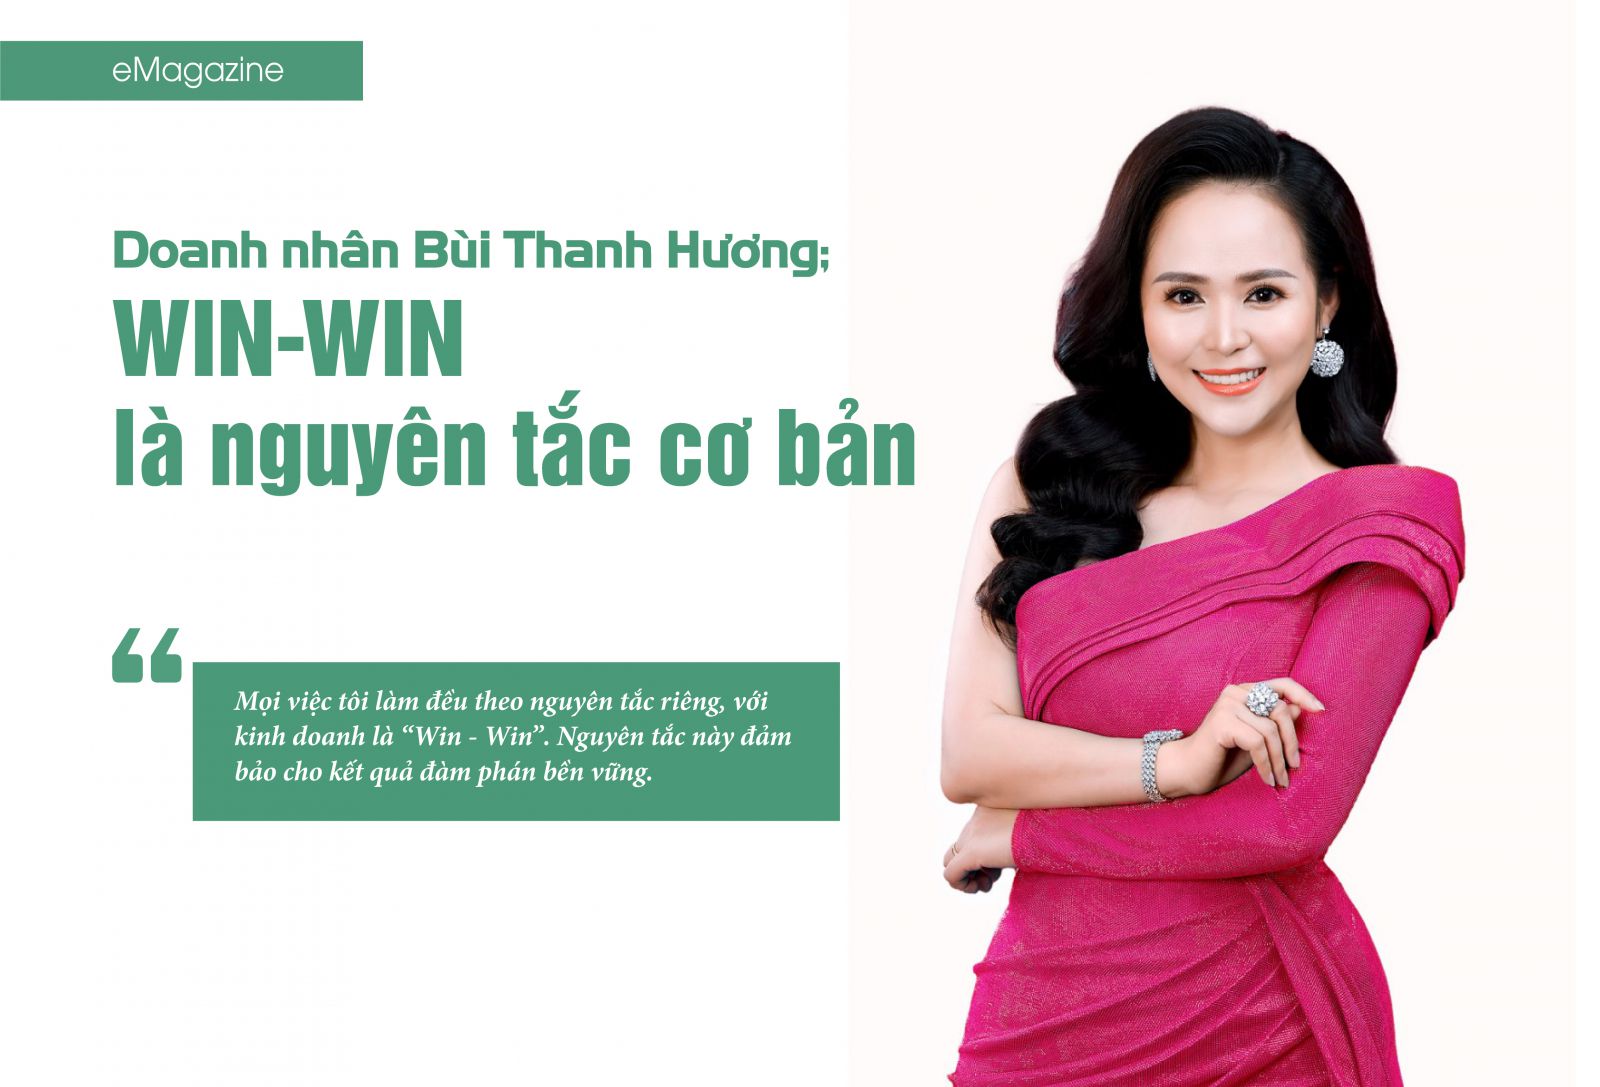 Win- Win là nguyên tắc cơ bản của doanh nhân Bùi Thanh Hương